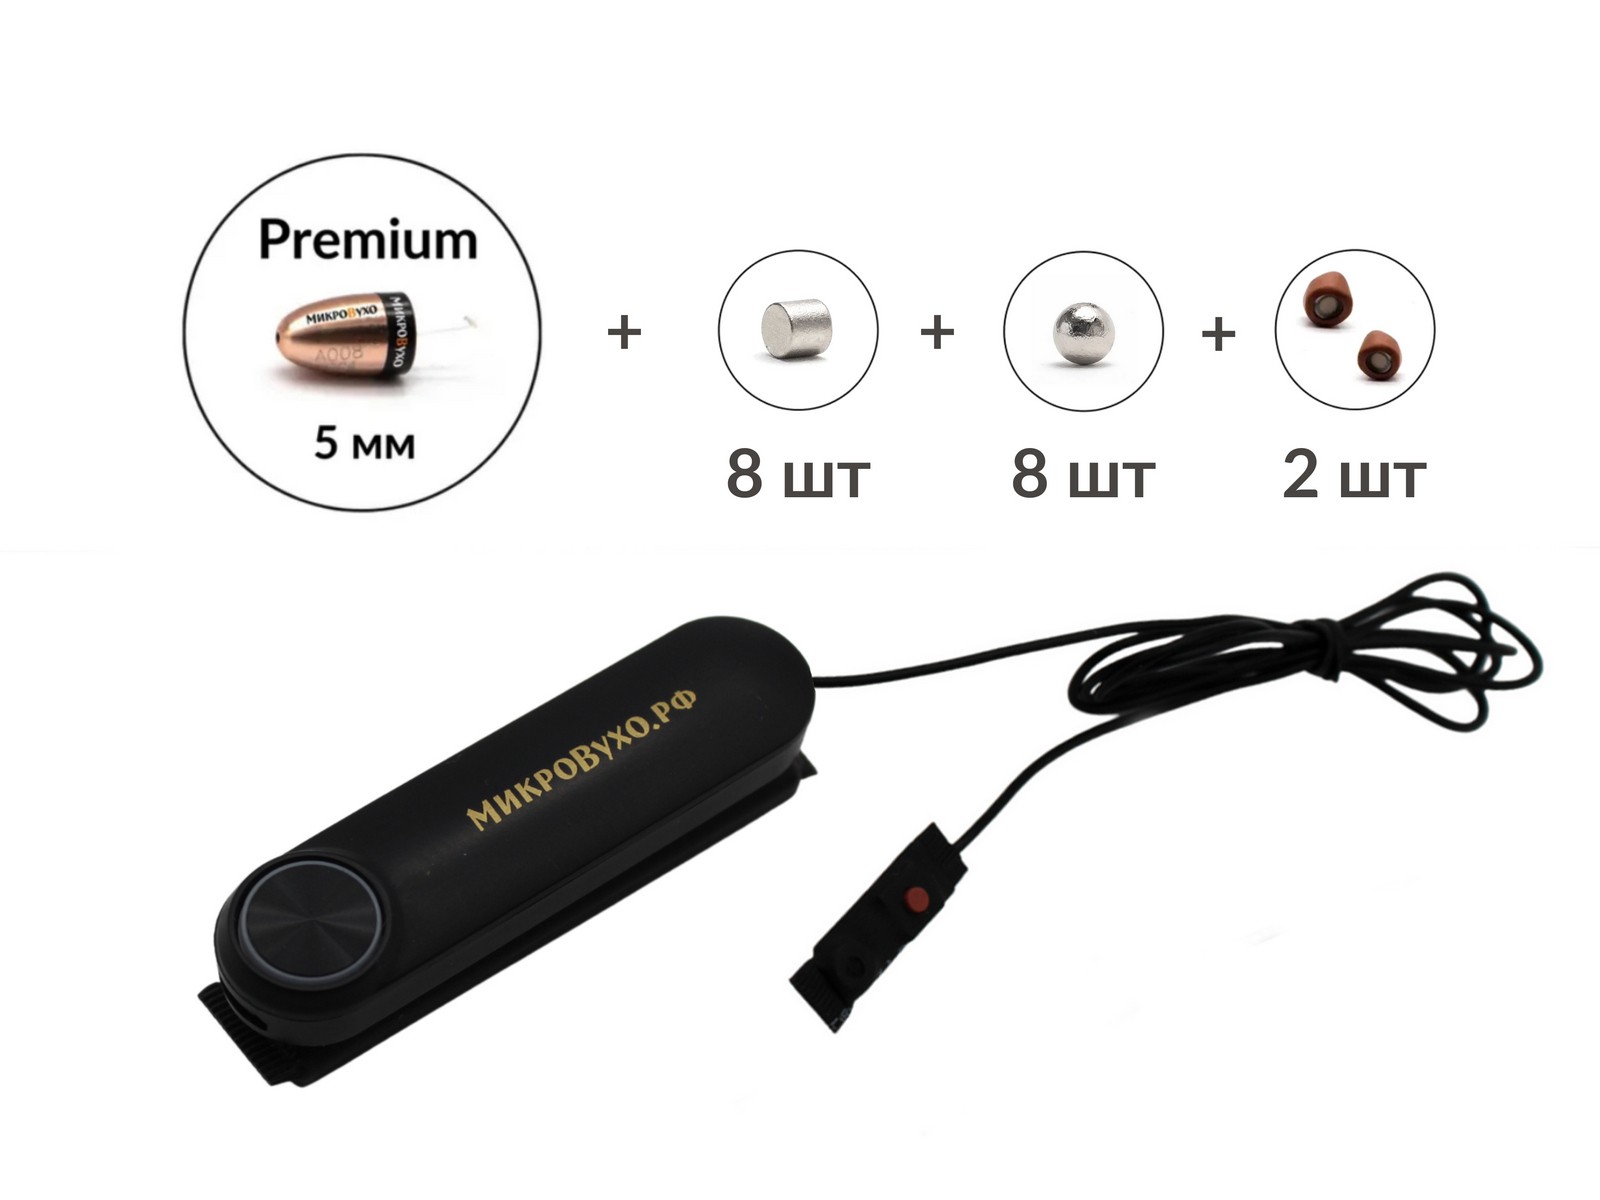 Универсальная гарнитура Bluetooth Box Standard Plus с капсулой Premium и магнитами 2 мм 2